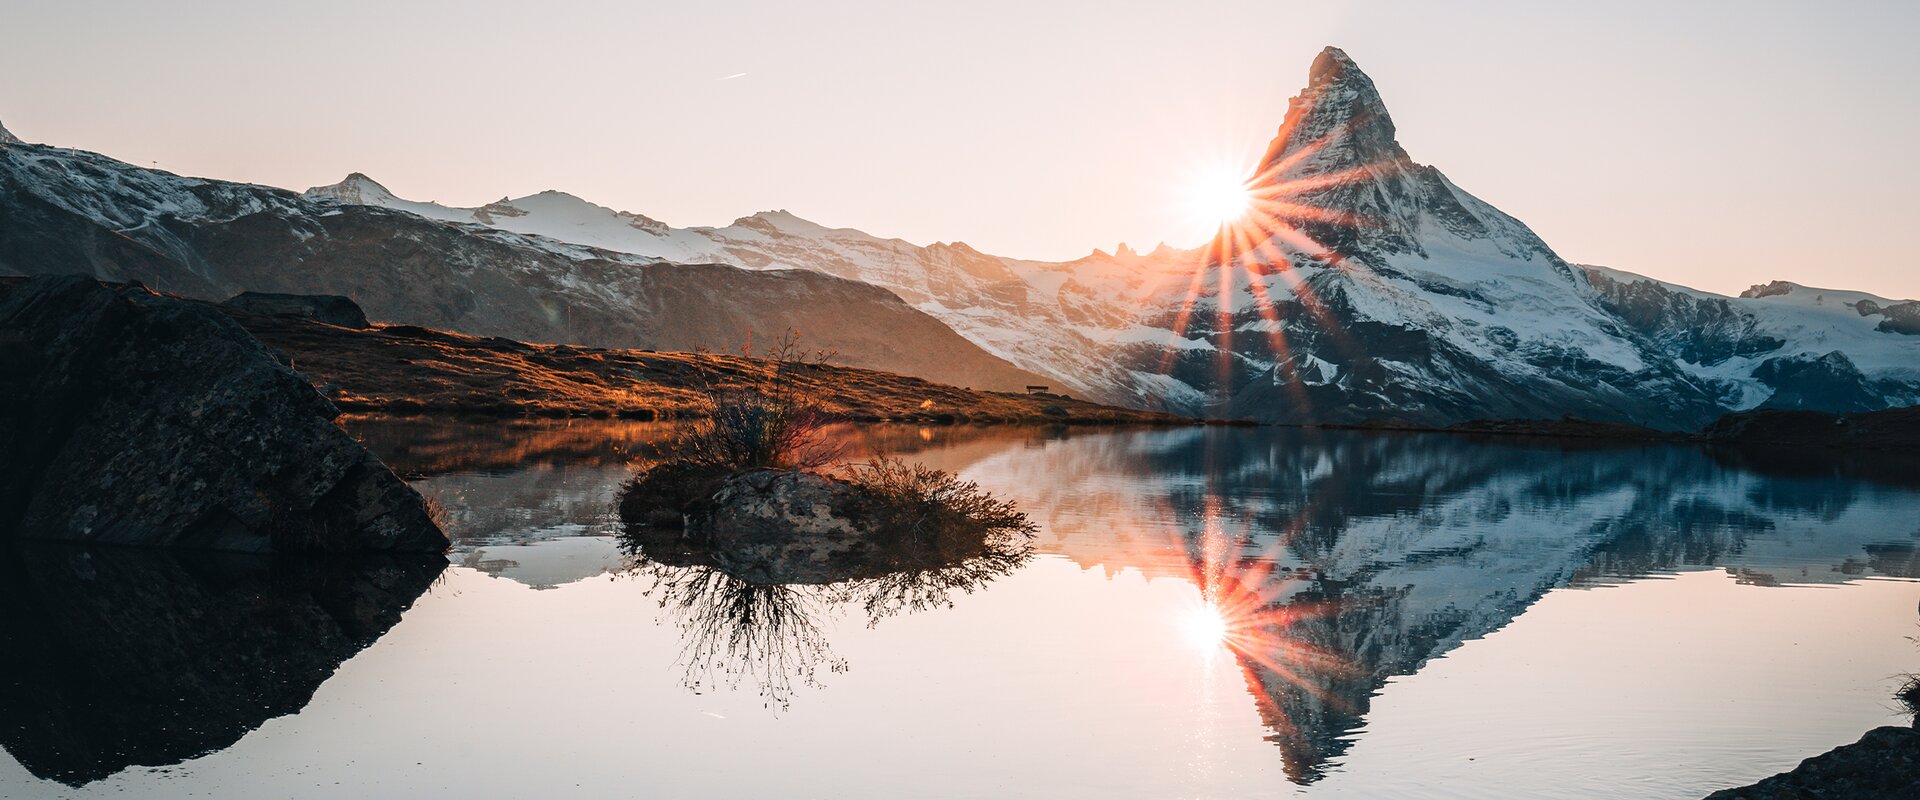 In herbstlicher Stimmung spiegelt sich das Matterhorn beim Sonnenuntergang im Stellisee.  | © Gabriel Perren